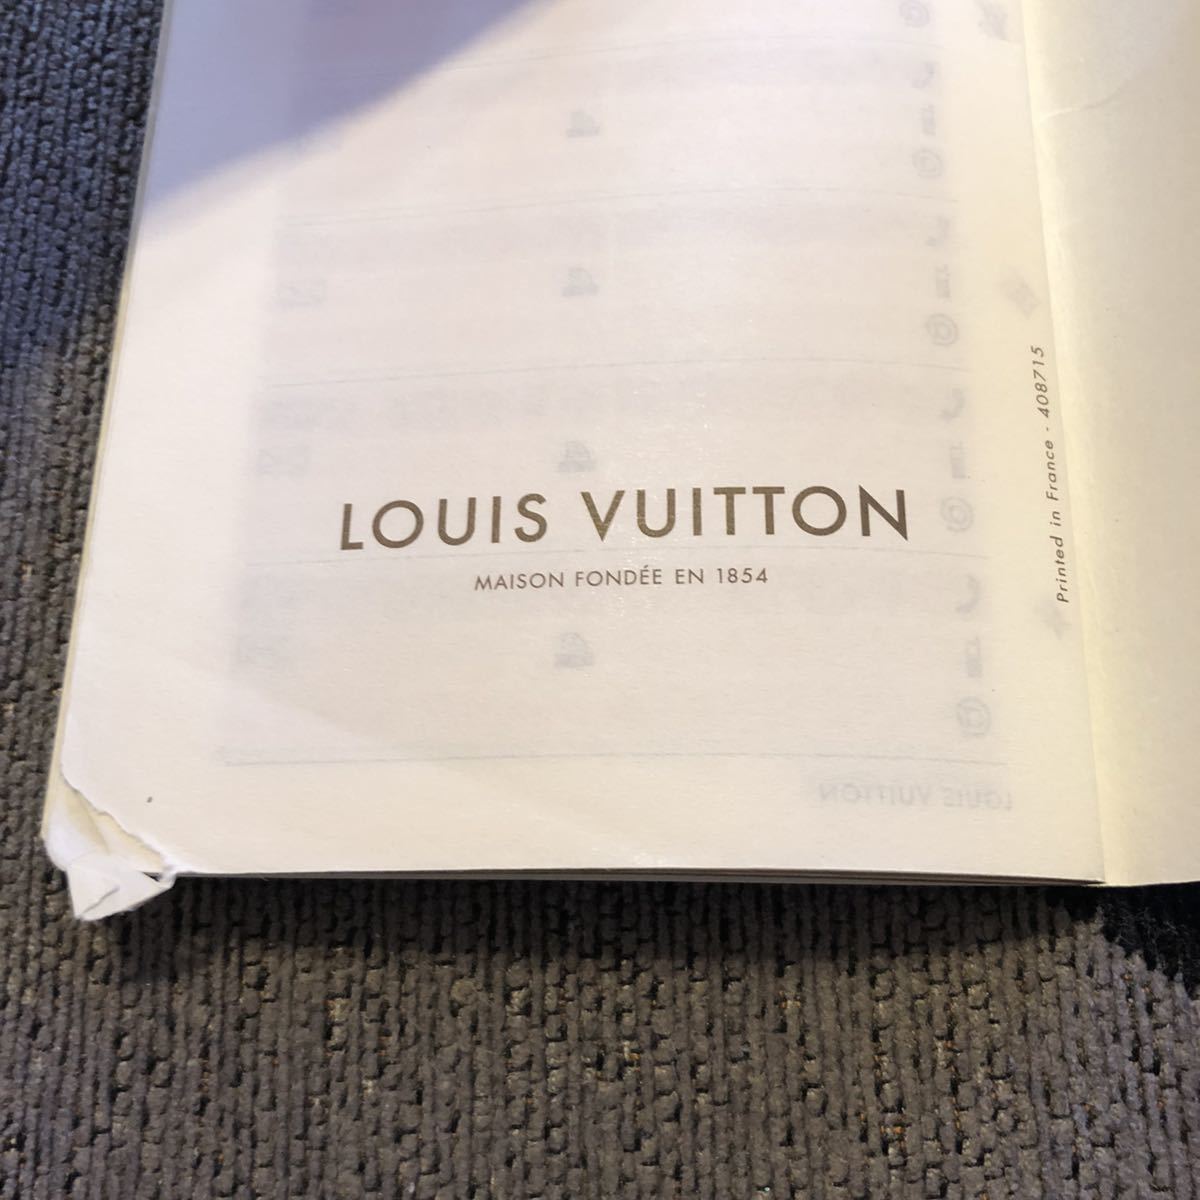 LOUIS VUITTON ルイ ヴィトン シティガイドブック 2009年 東京